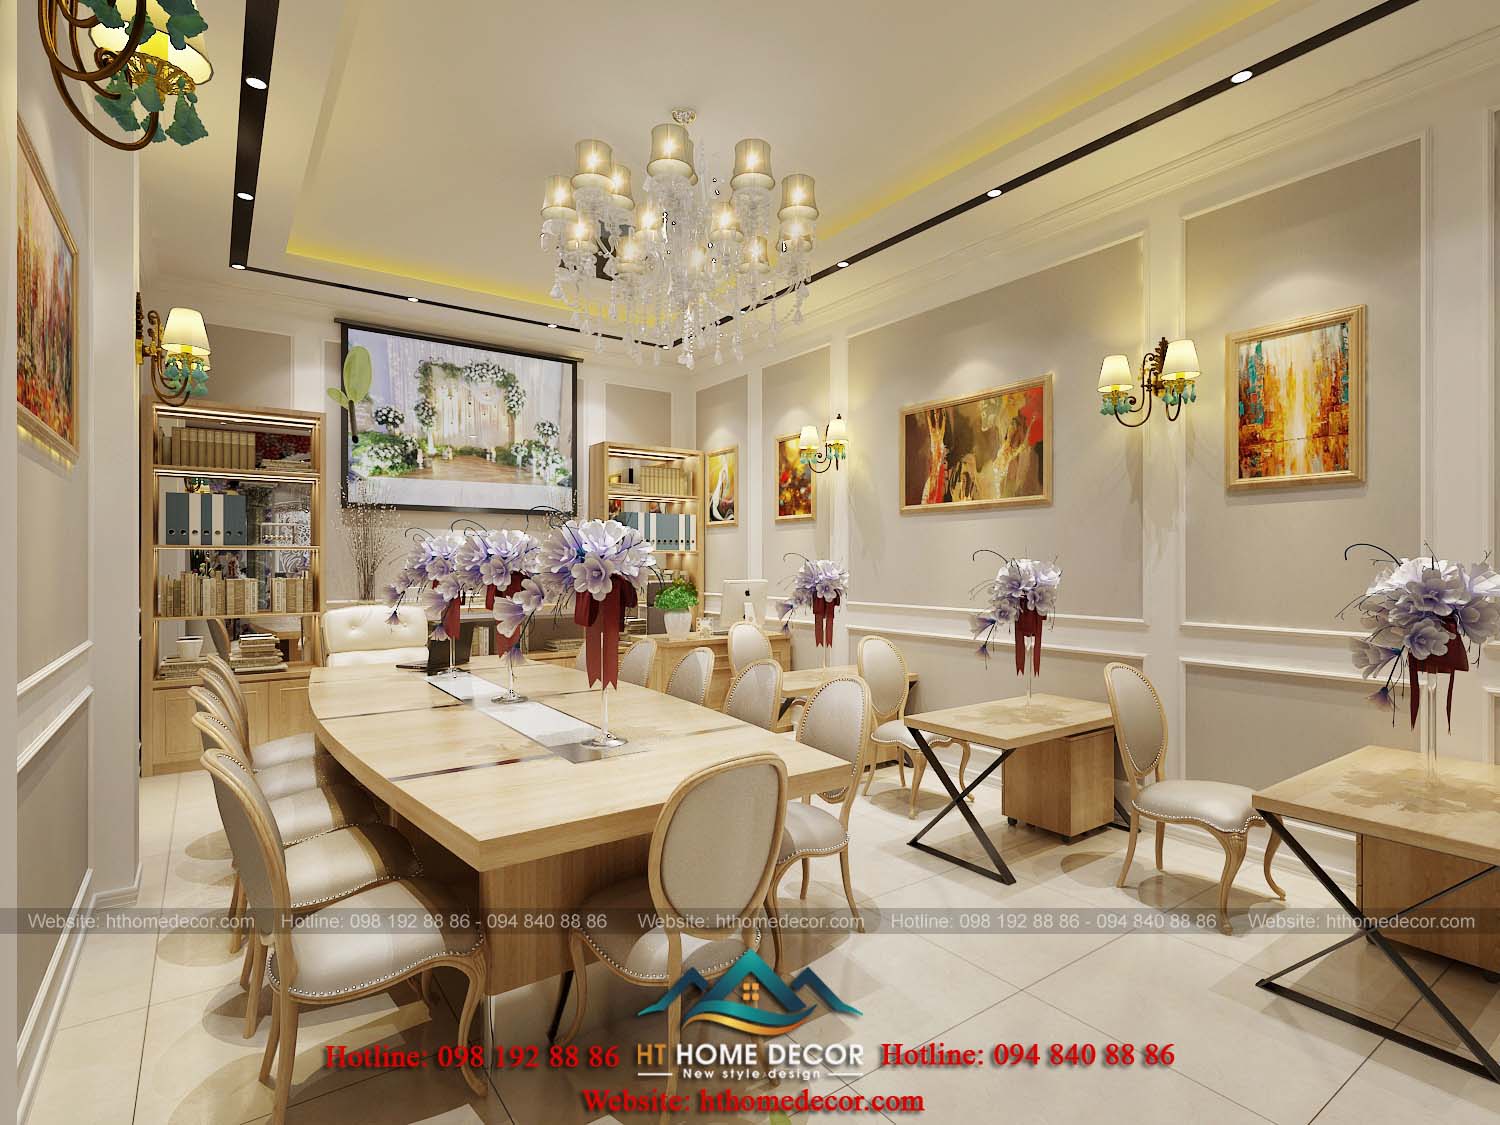 Phòng ăn đẹp mắt với chất liệu gỗ. Màu beige kết hợp trắng khiến không gian thêm rộng rãi.